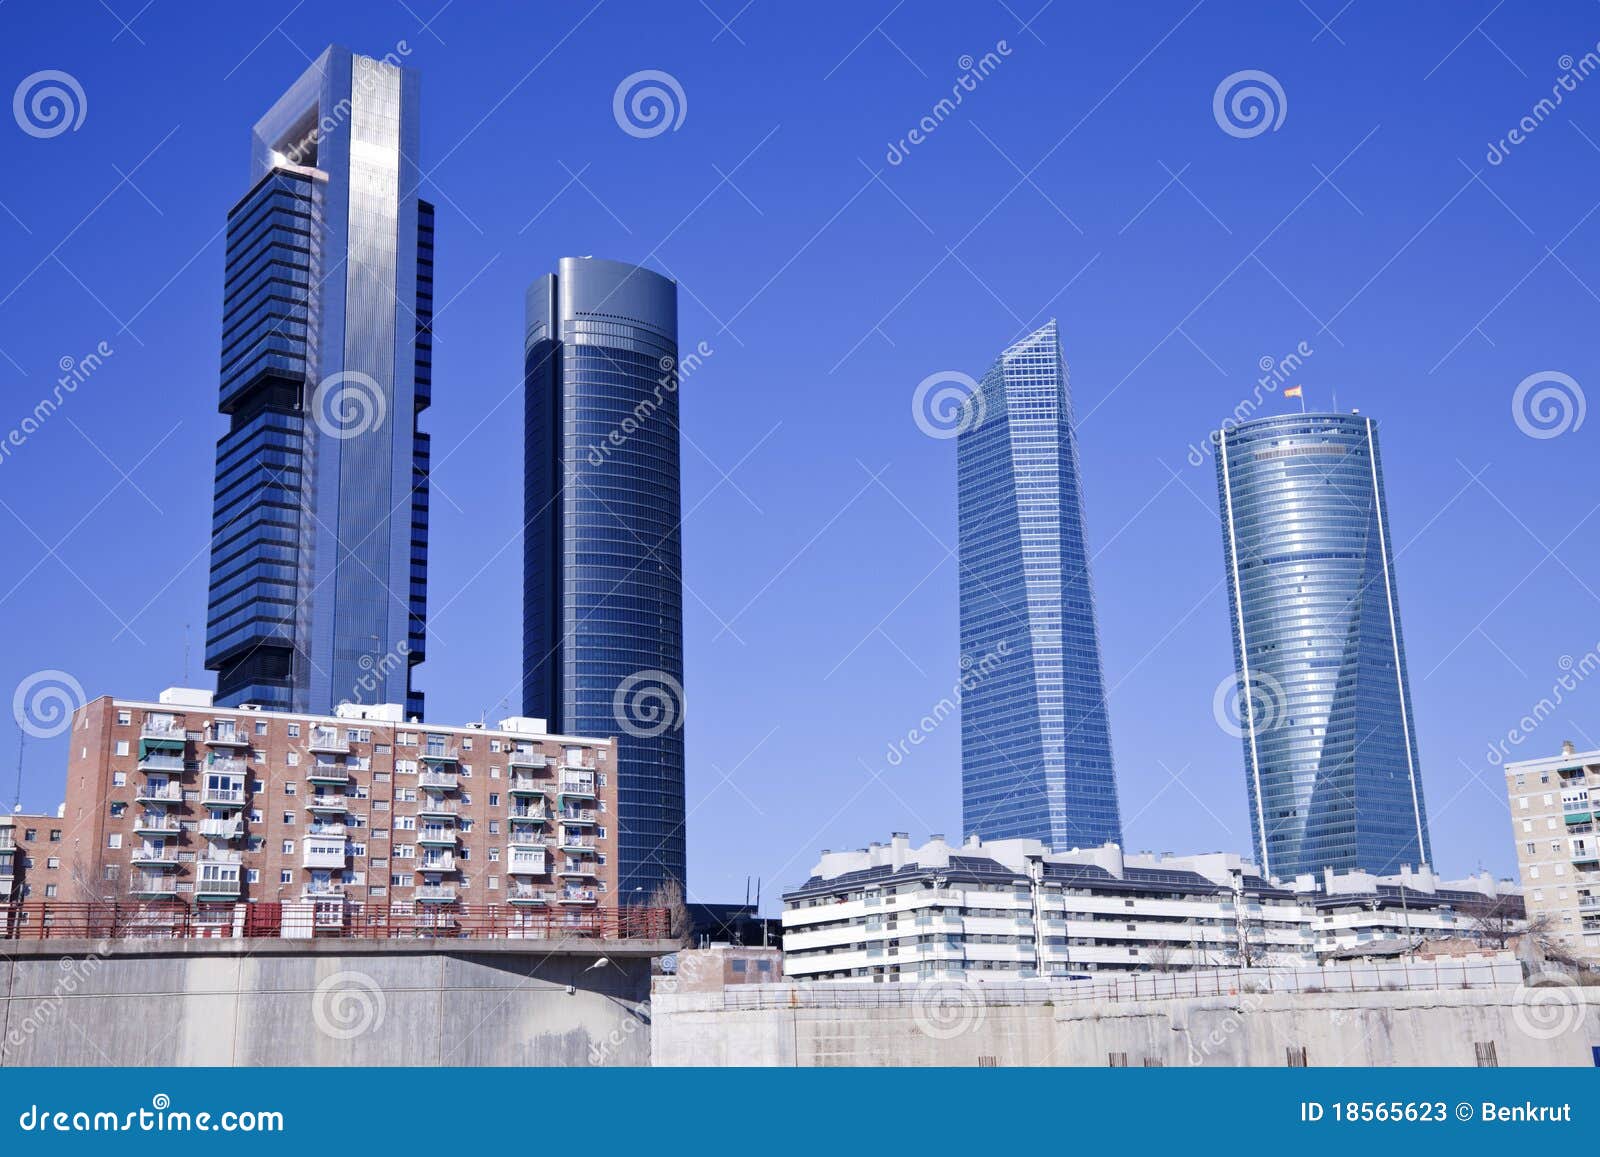 cuatro torres in madrid